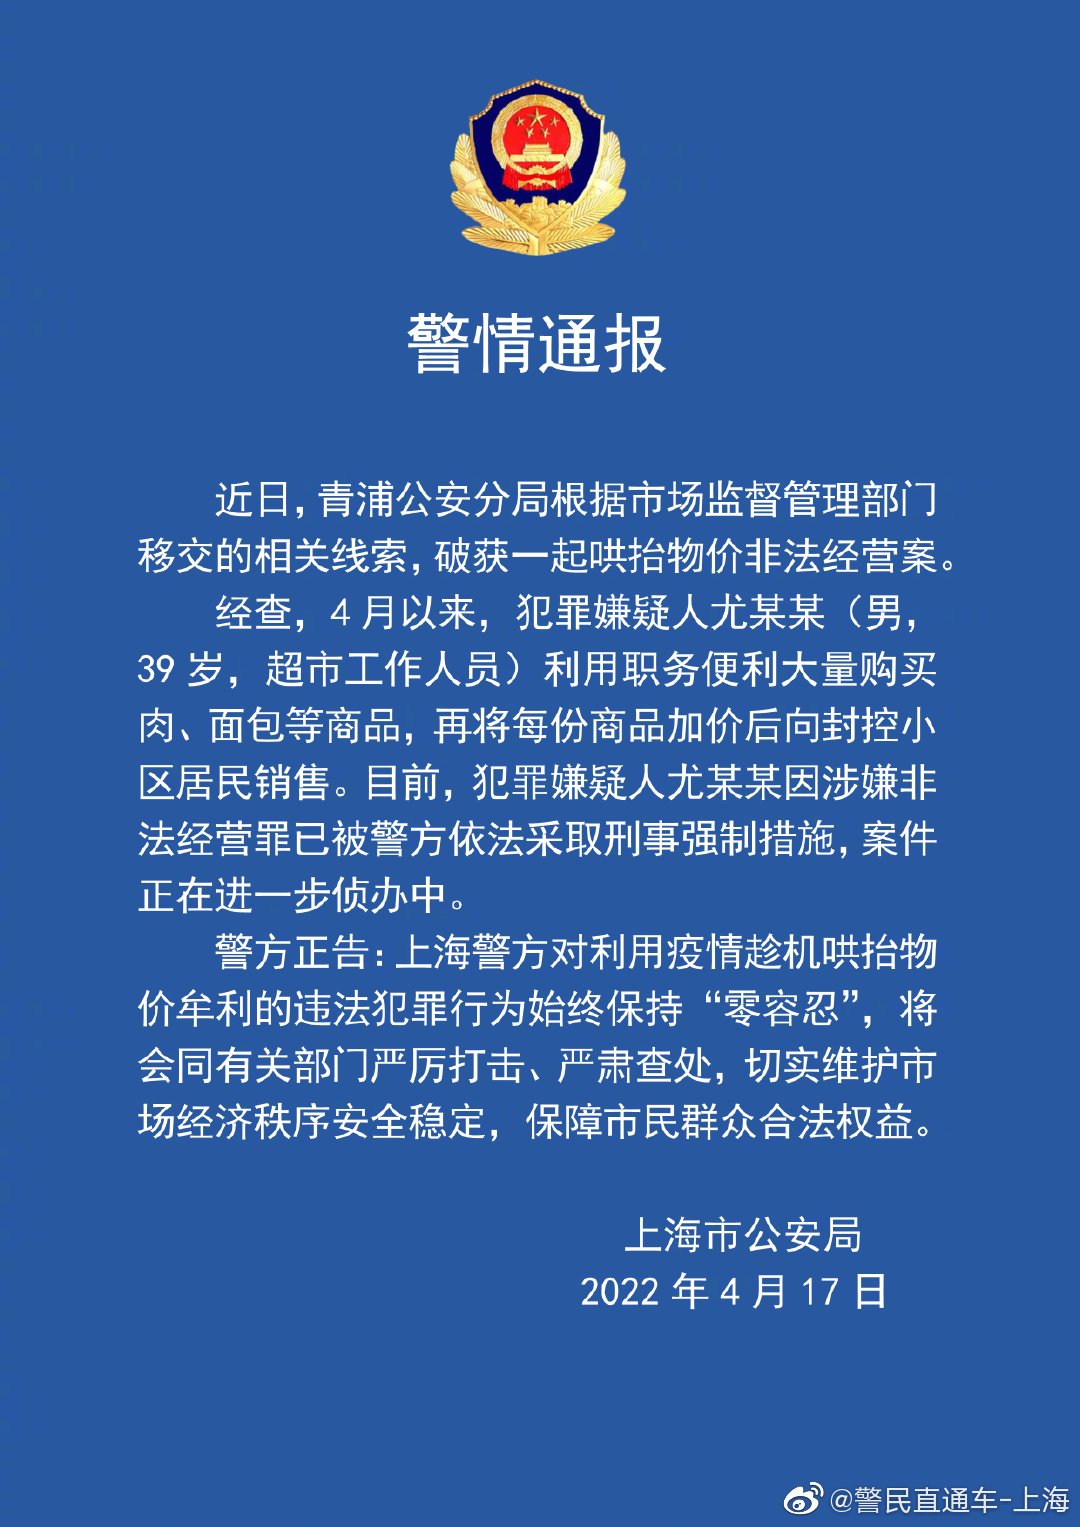 上海警方破获一起哄抬物价非法经营案